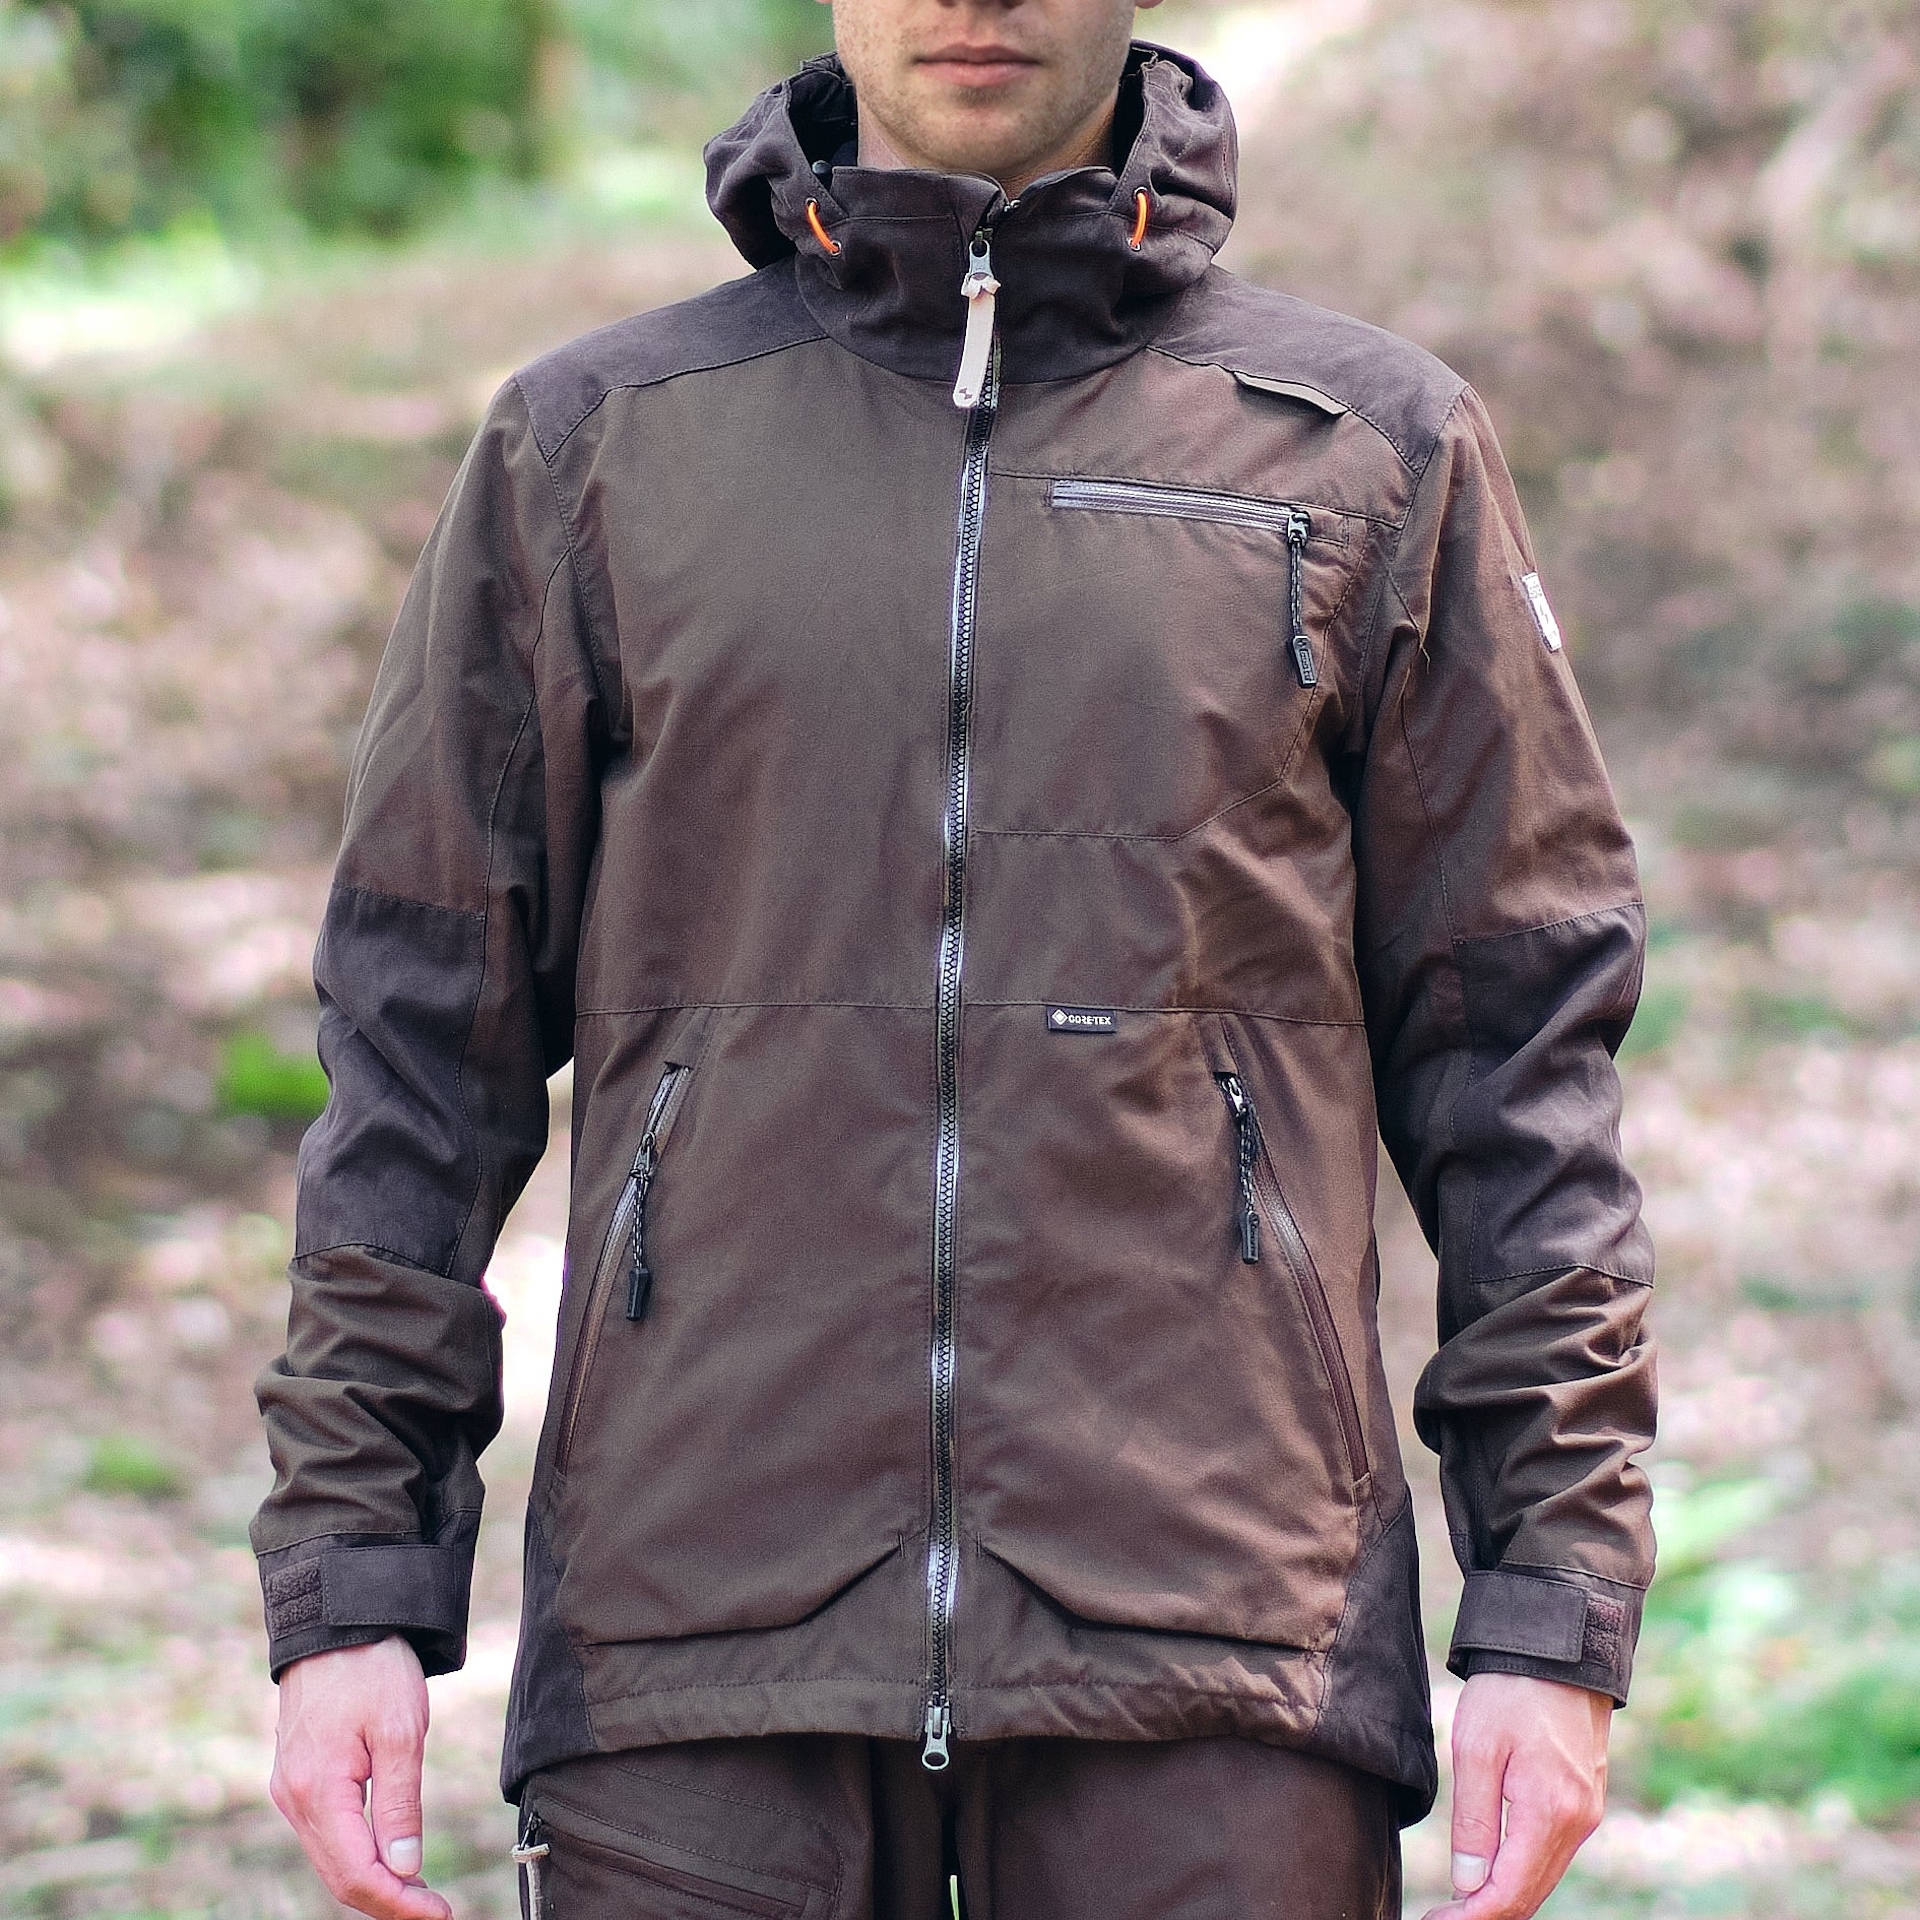 Мужская полевая курткка Sasta Evo jacket, 39 Dark Forest на мембране Gore- Tex для охоты, рыбалки, туризма, трекинга купить в MyBiggame